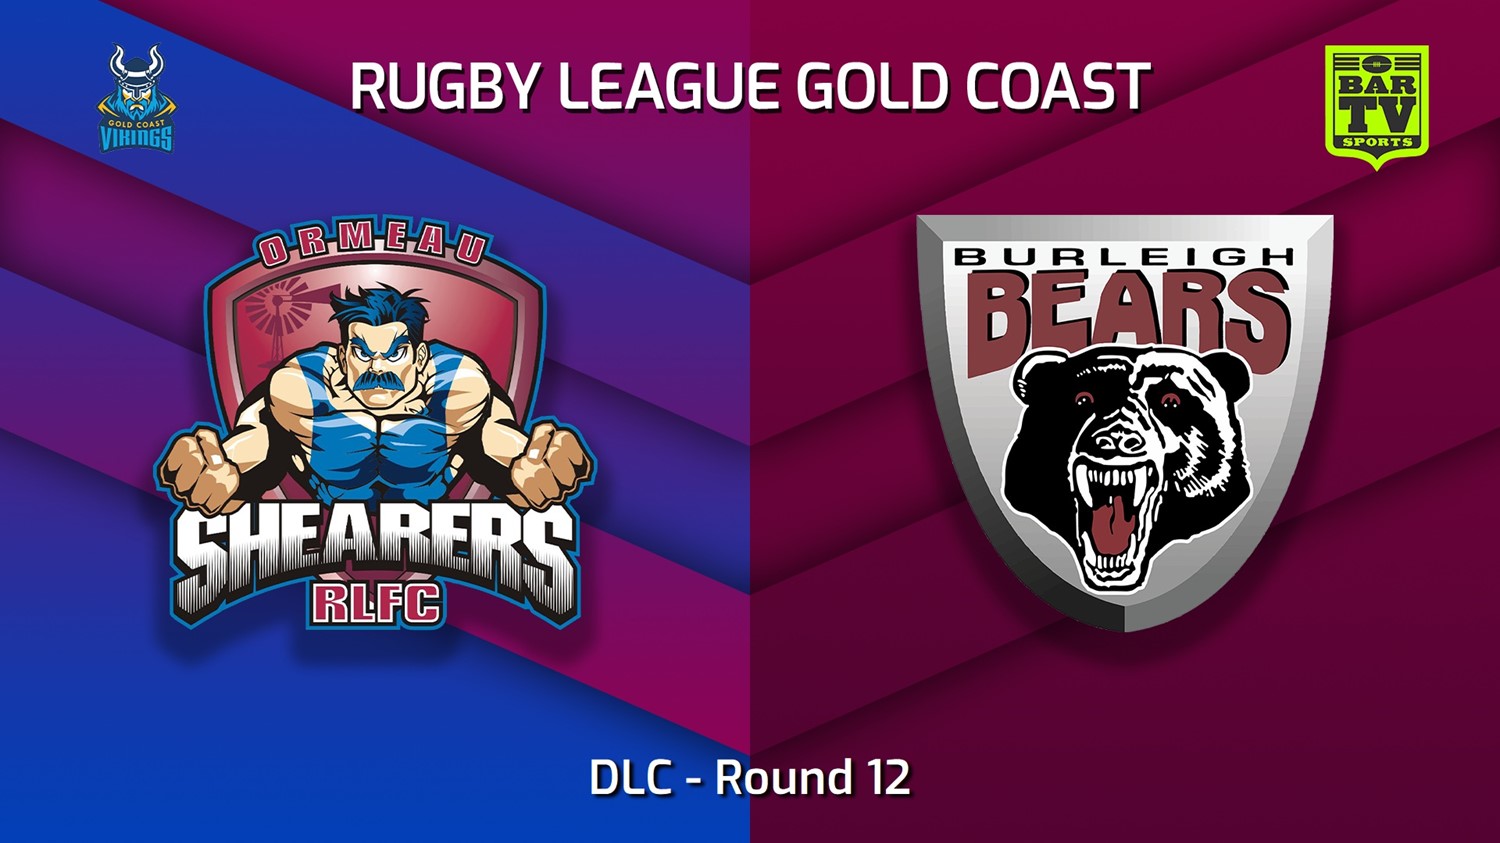 220702-Gold Coast Round 12 - DLC - Ormeau Shearers v Burleigh Bears Slate Image